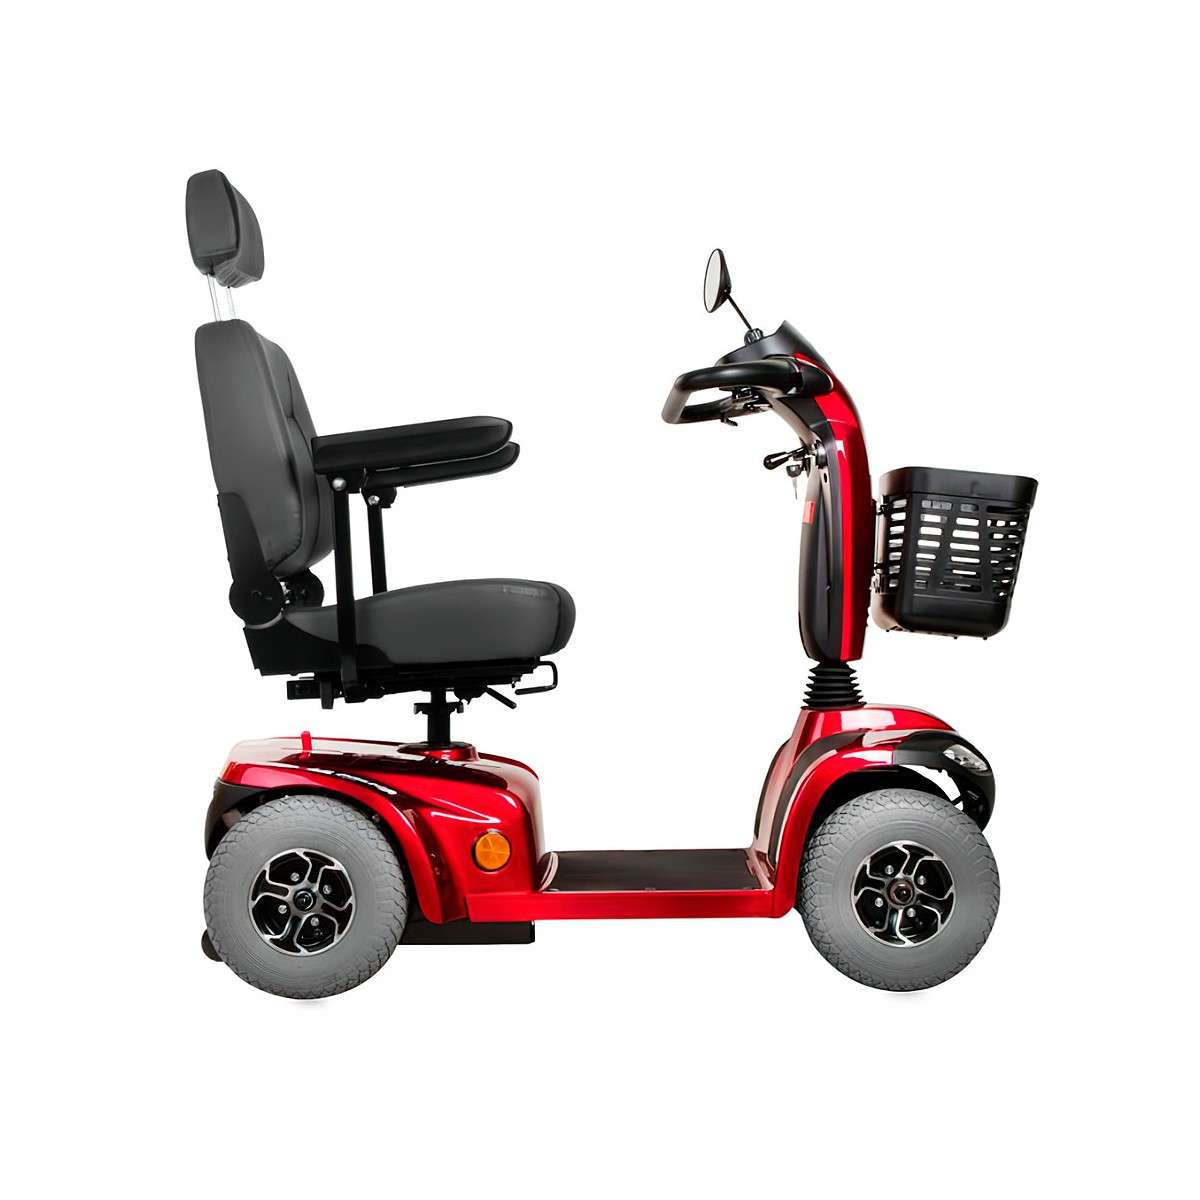 Scooter eléctrico desmontable La Palma Rojo - Detalle 2